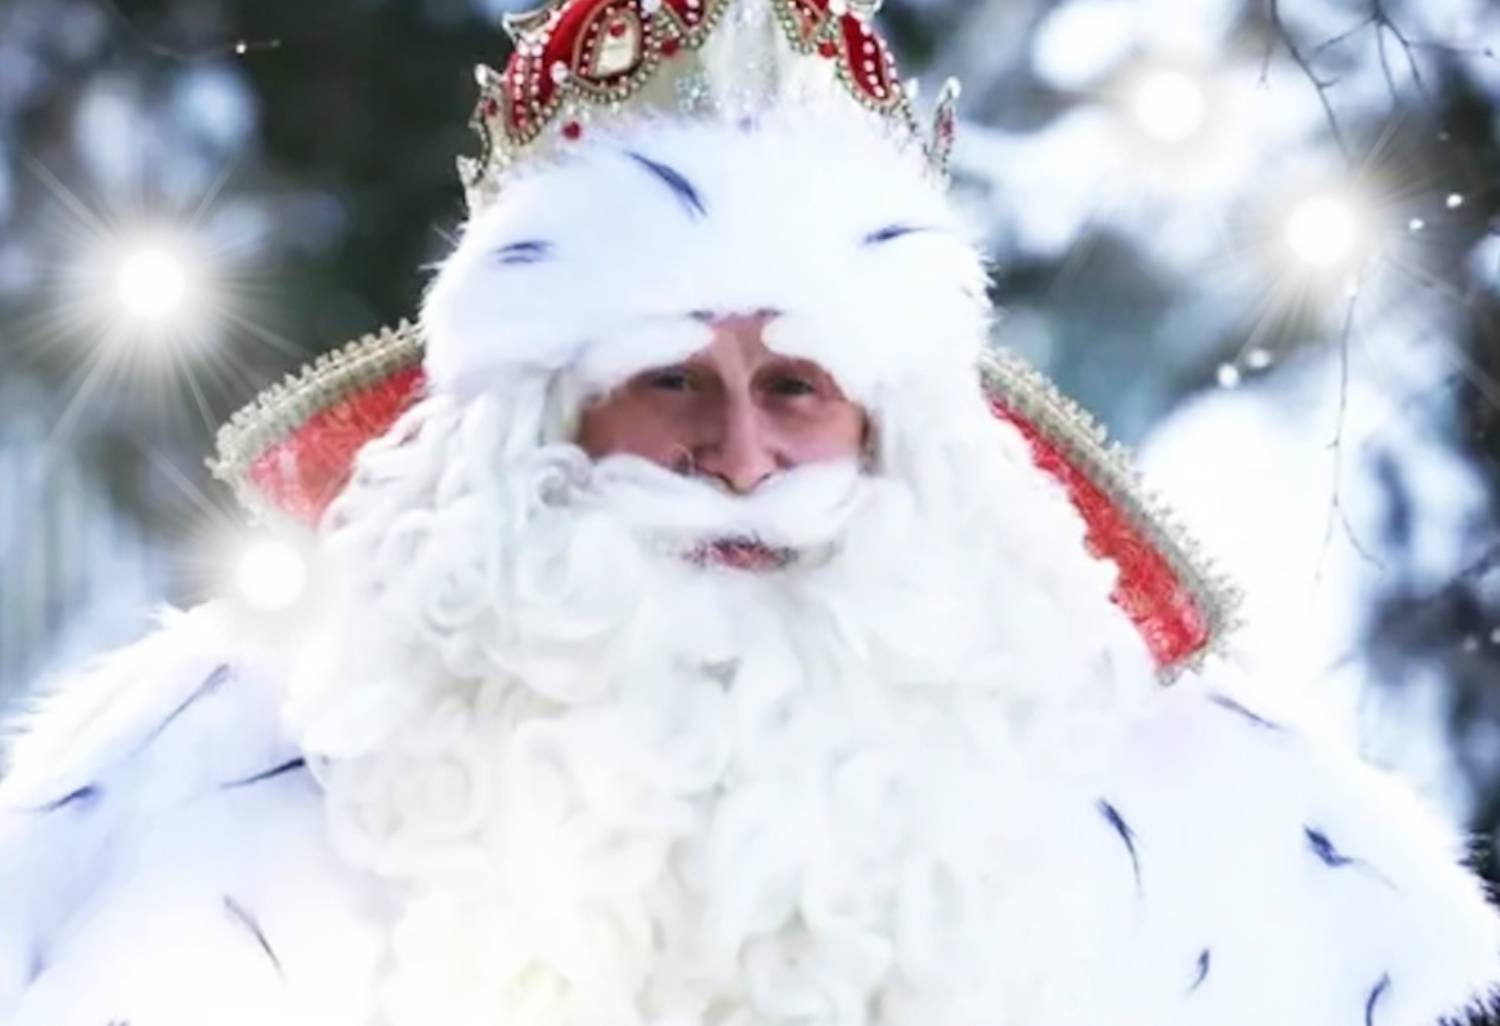 Ded Moroz da Velikij Ustjug visiterà Roma nell’ambito del suo viaggio in Europa